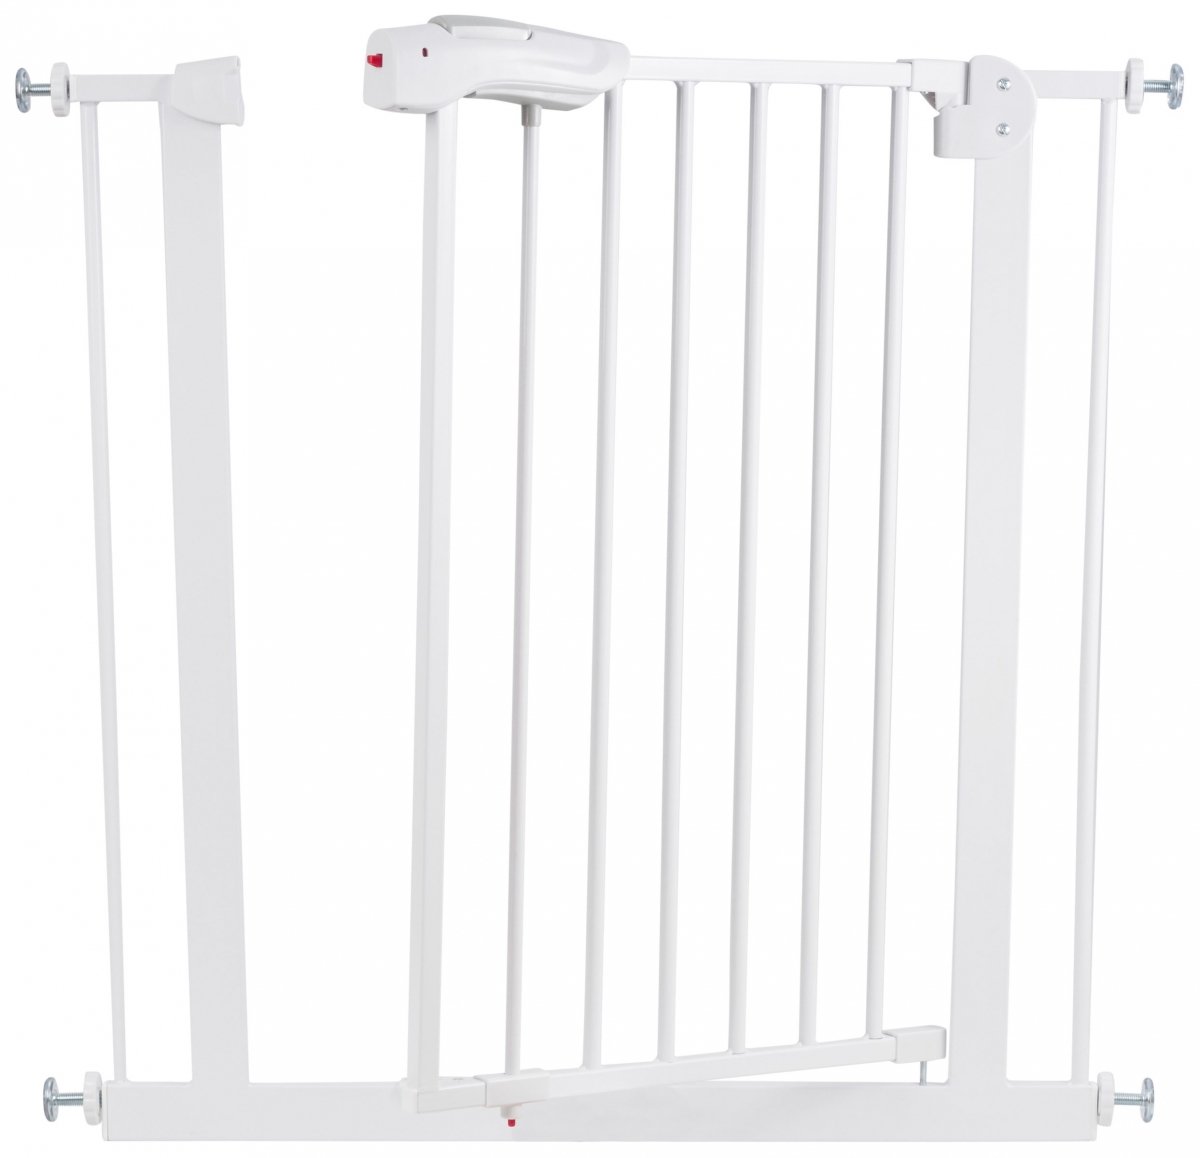 Bramka rozporowa do drzwi i schodów - barierka ochronna zabezpieczająca - szerokość 76...85cm